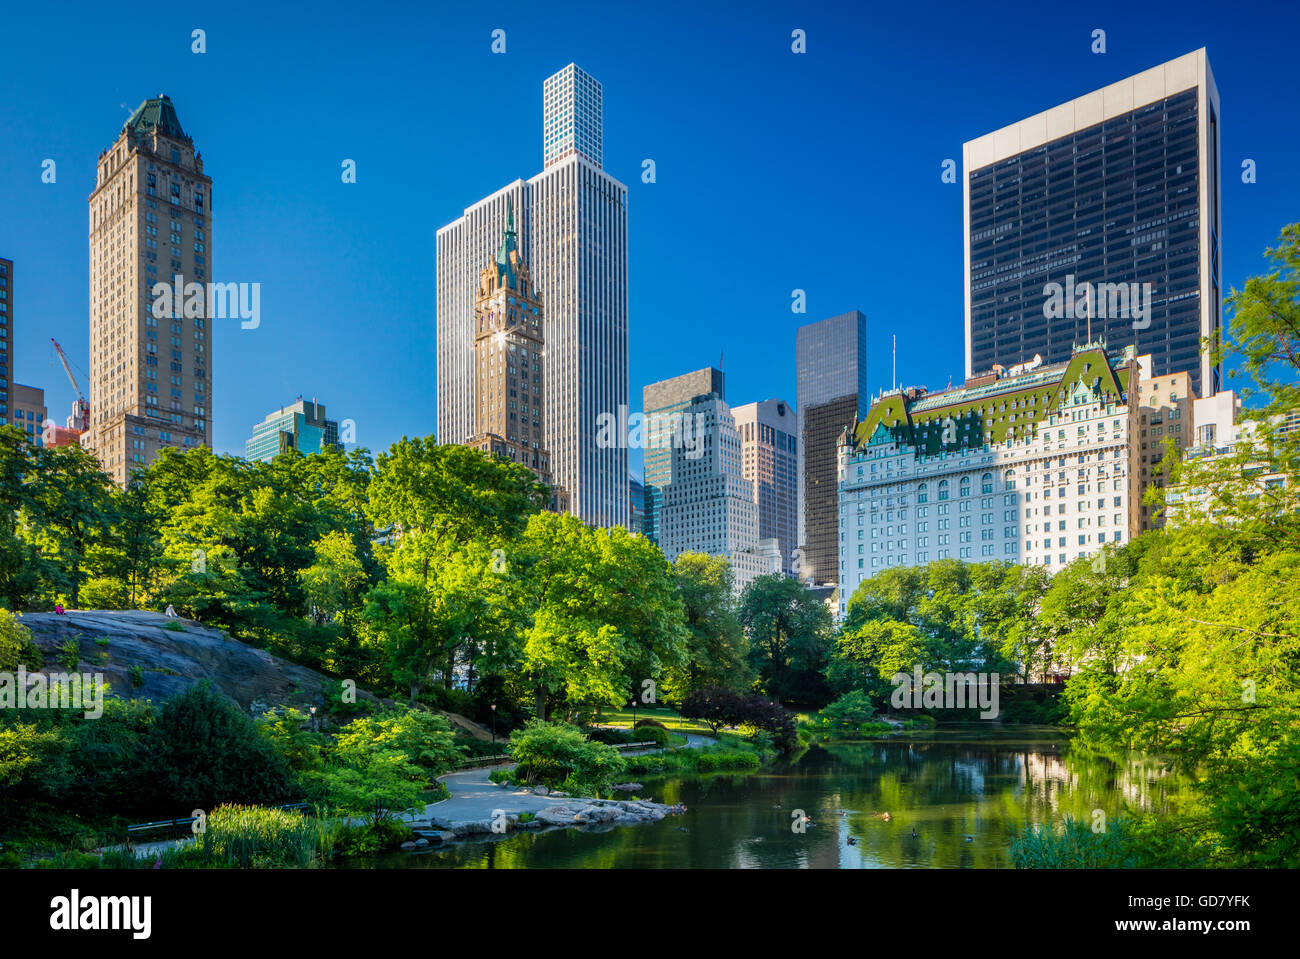 L'étang dans Central Park, New York City, avec des immeubles de midtown visibles à l'horizon Banque D'Images